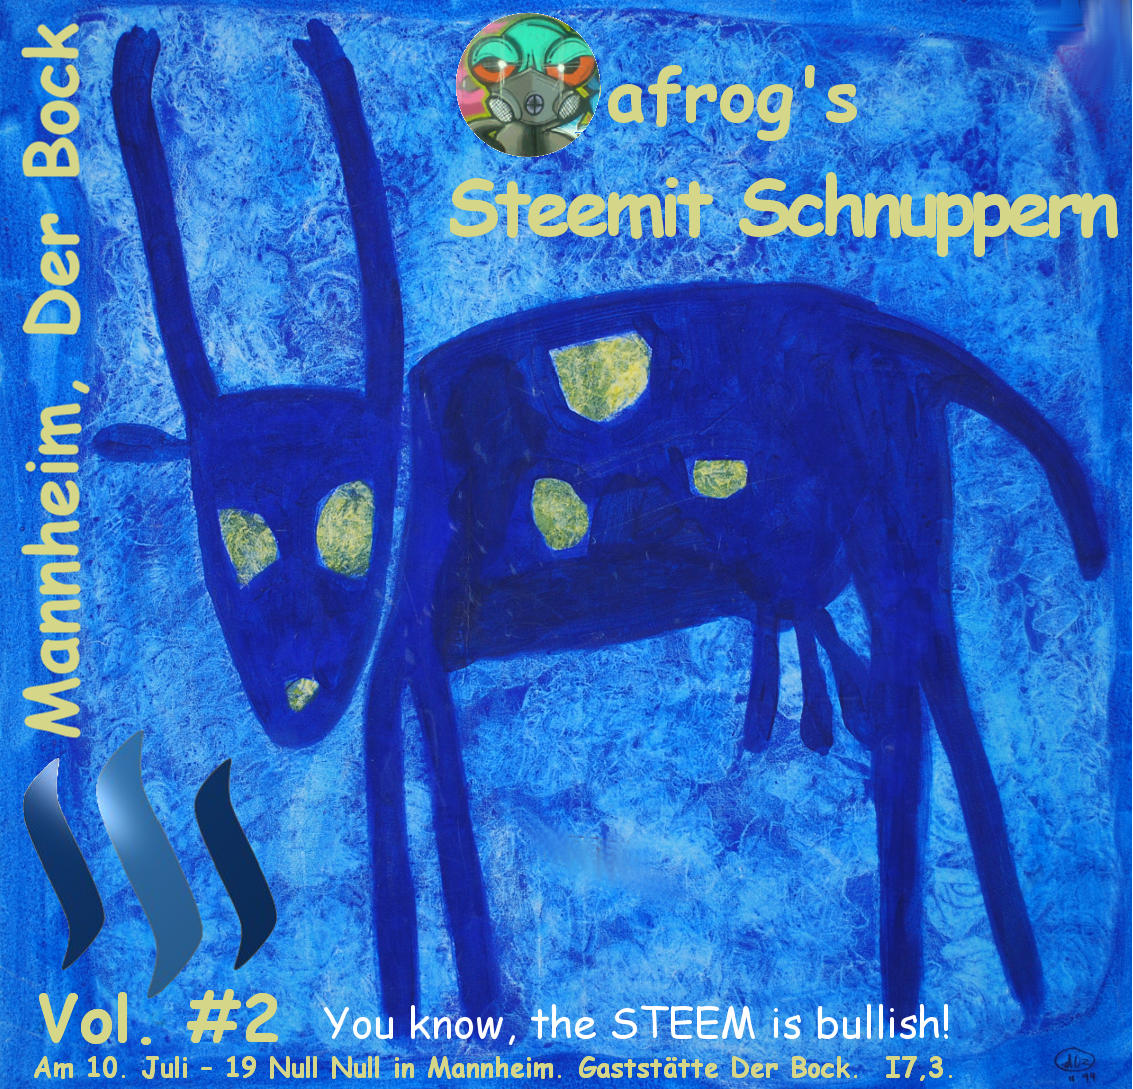 Steemit-Schnuppern-Vol-2-10-07-2017.jpg